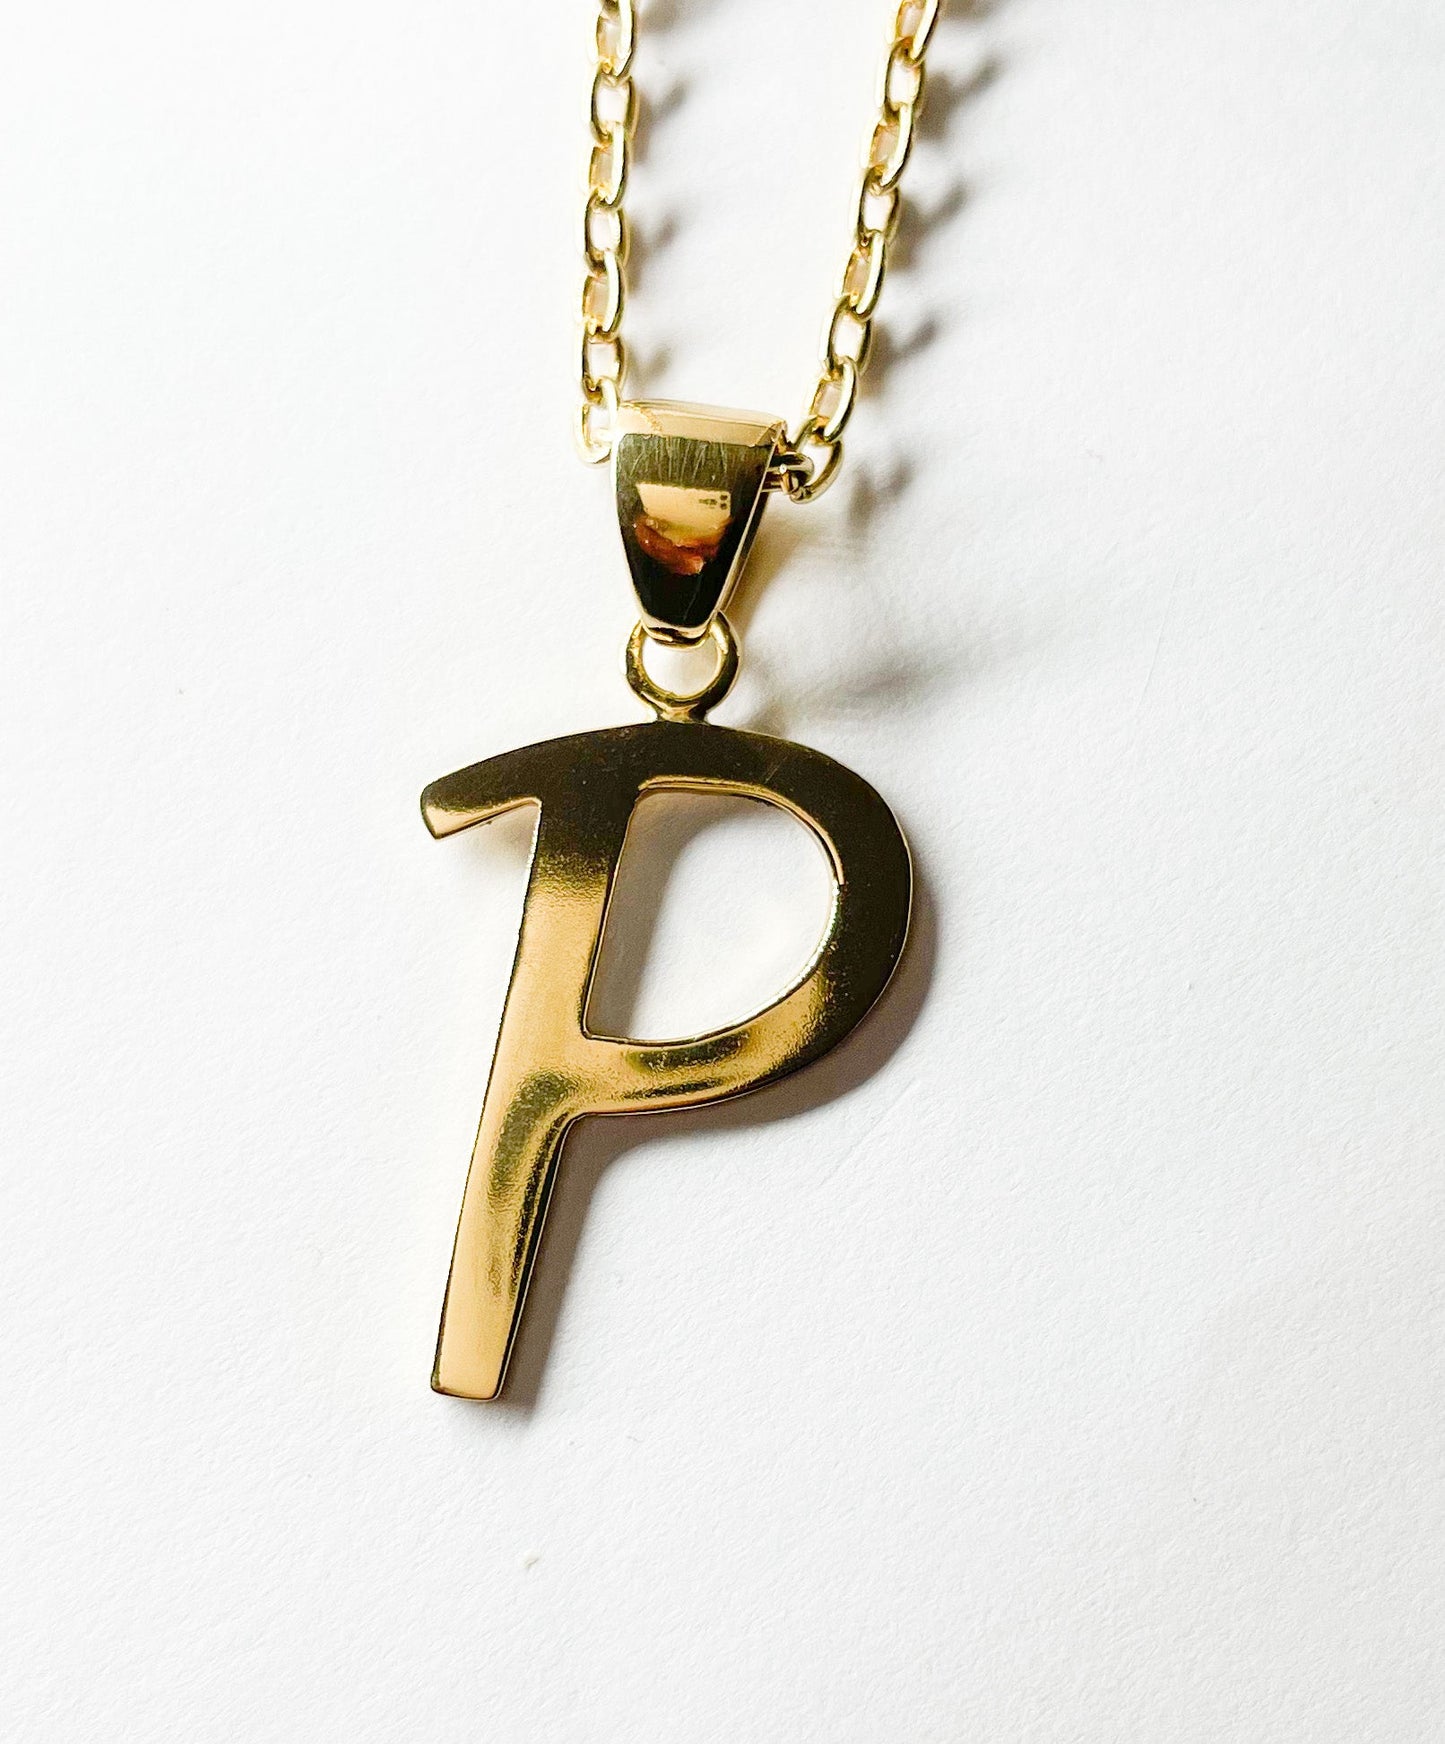 Initial "P" Pendant - Alchemia